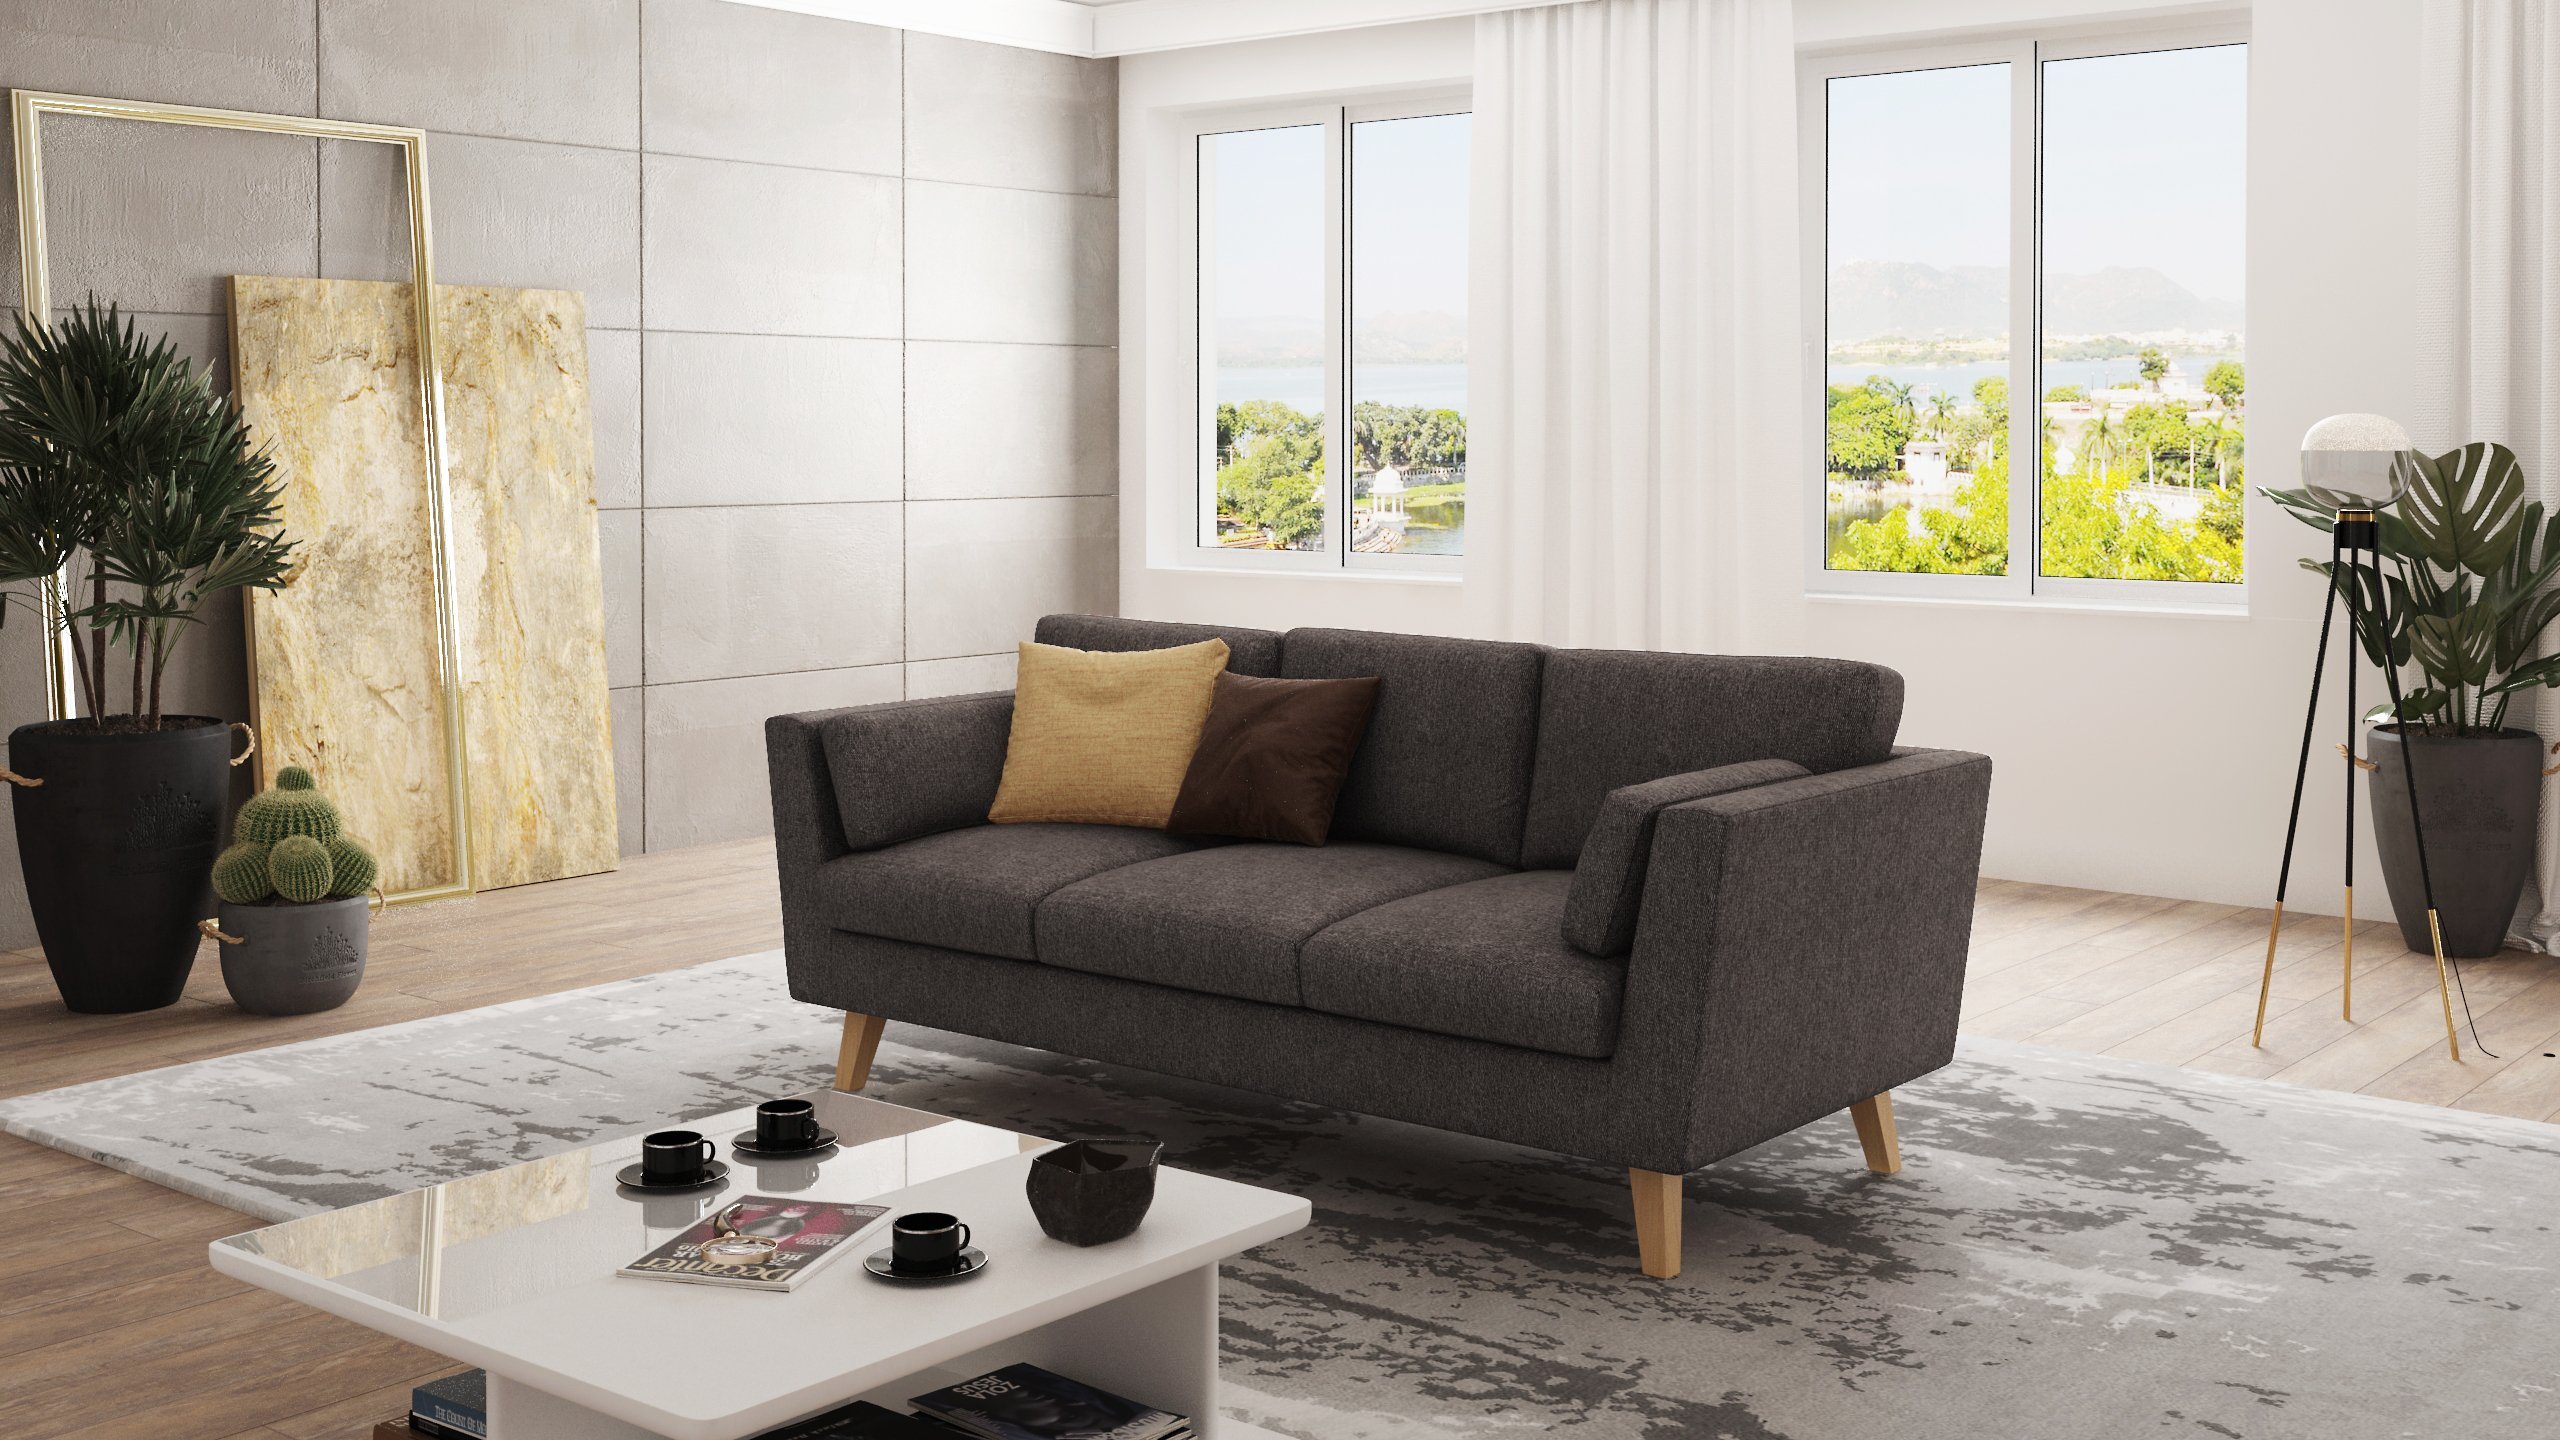 Möbel Wellenfederung 3-Sitzer mit im Khaki Angeles - Braun skandinavischen Sofa S-Style Design,